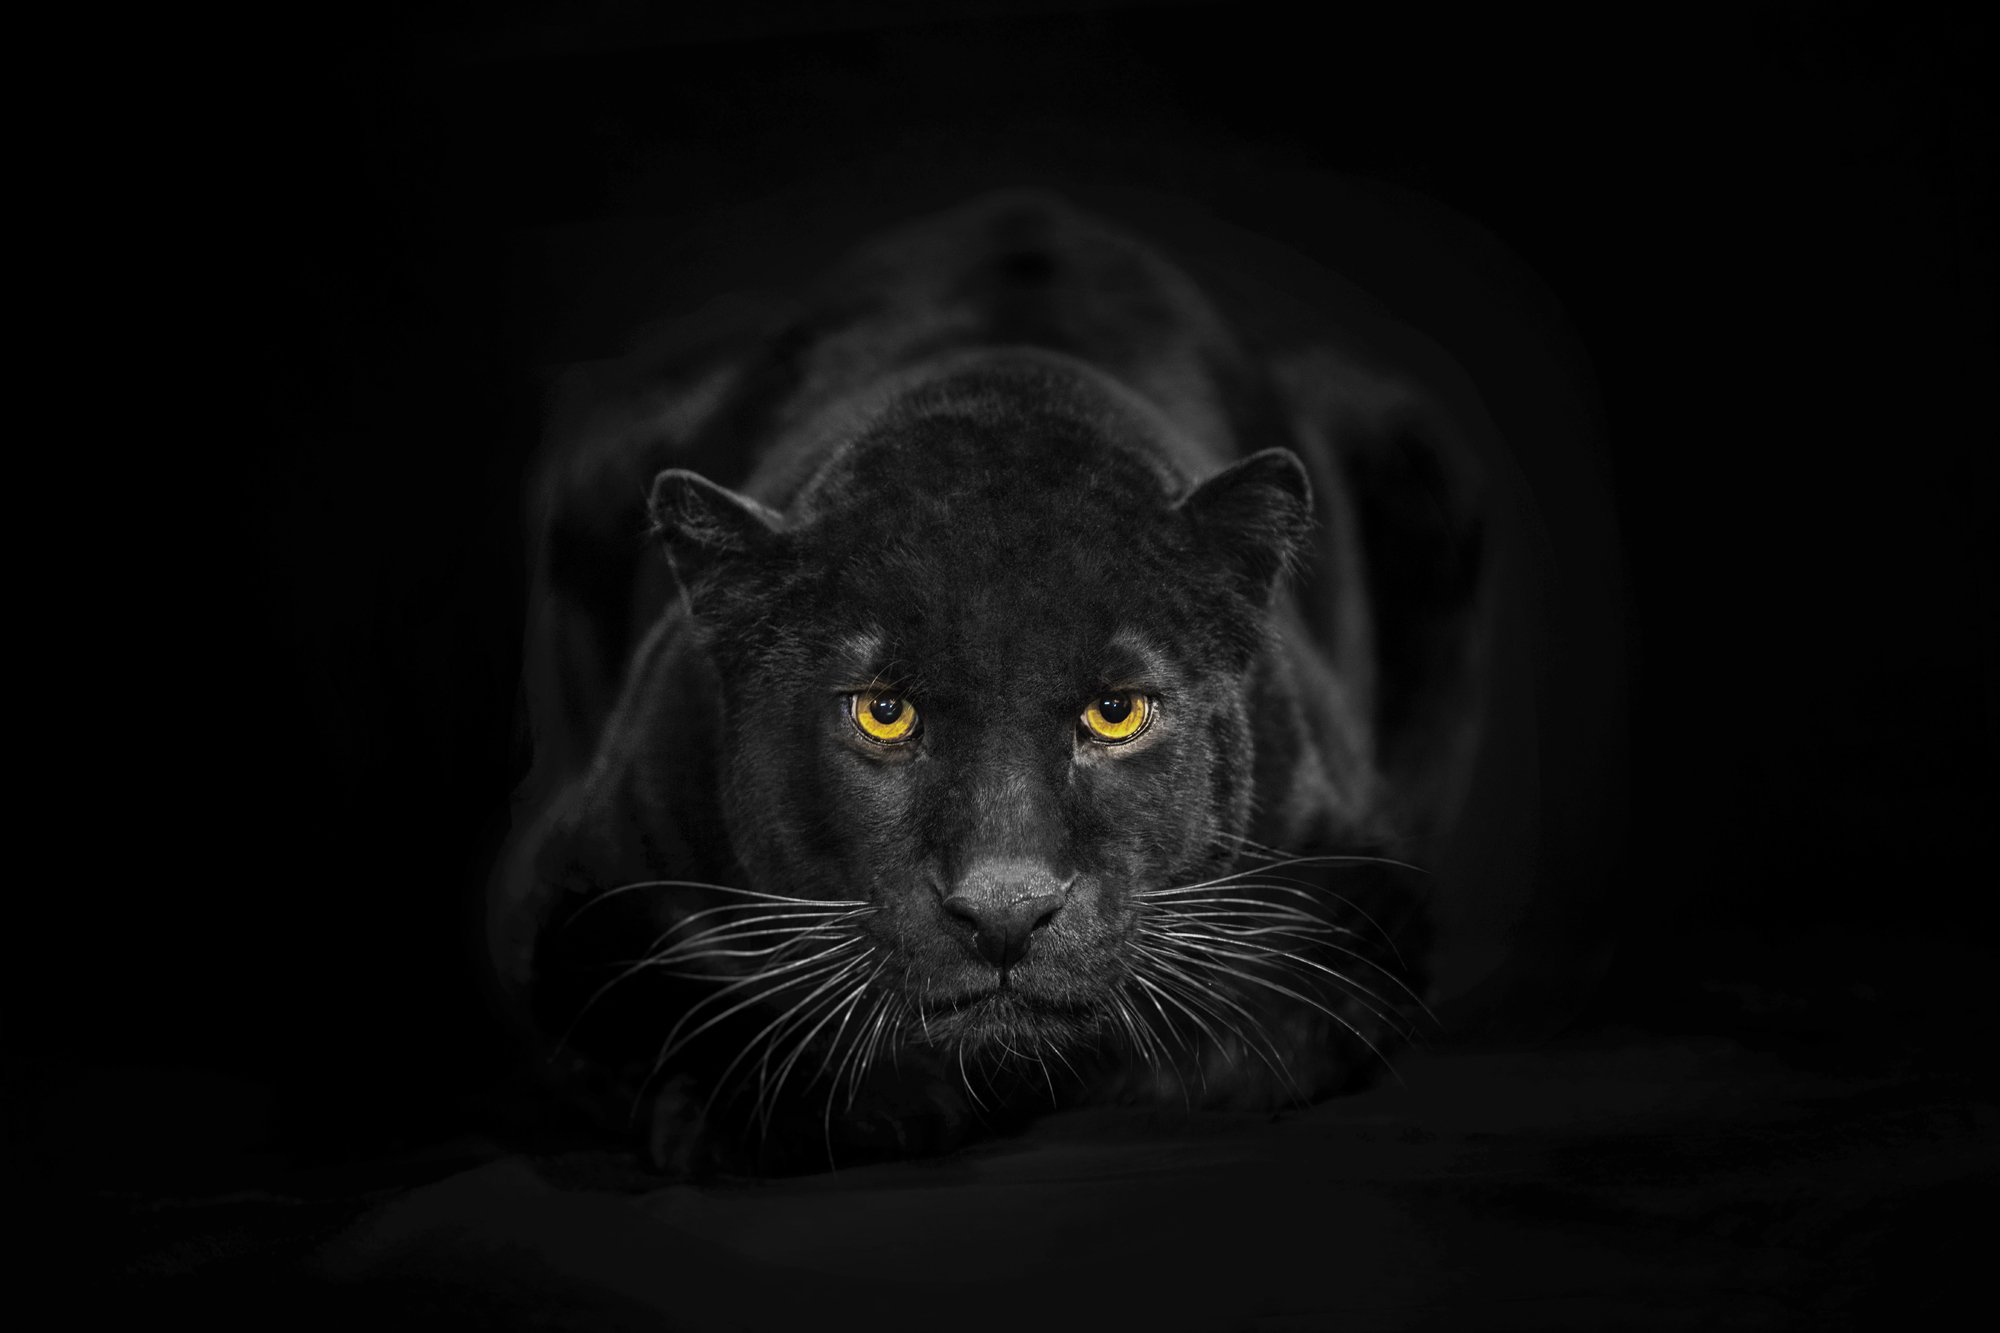 Заставка черный фон. Shaaz Jung черная пантера. Черная пантера на черном фоне. Обои на рабочий стол пантера. Глаза пантеры в темноте.